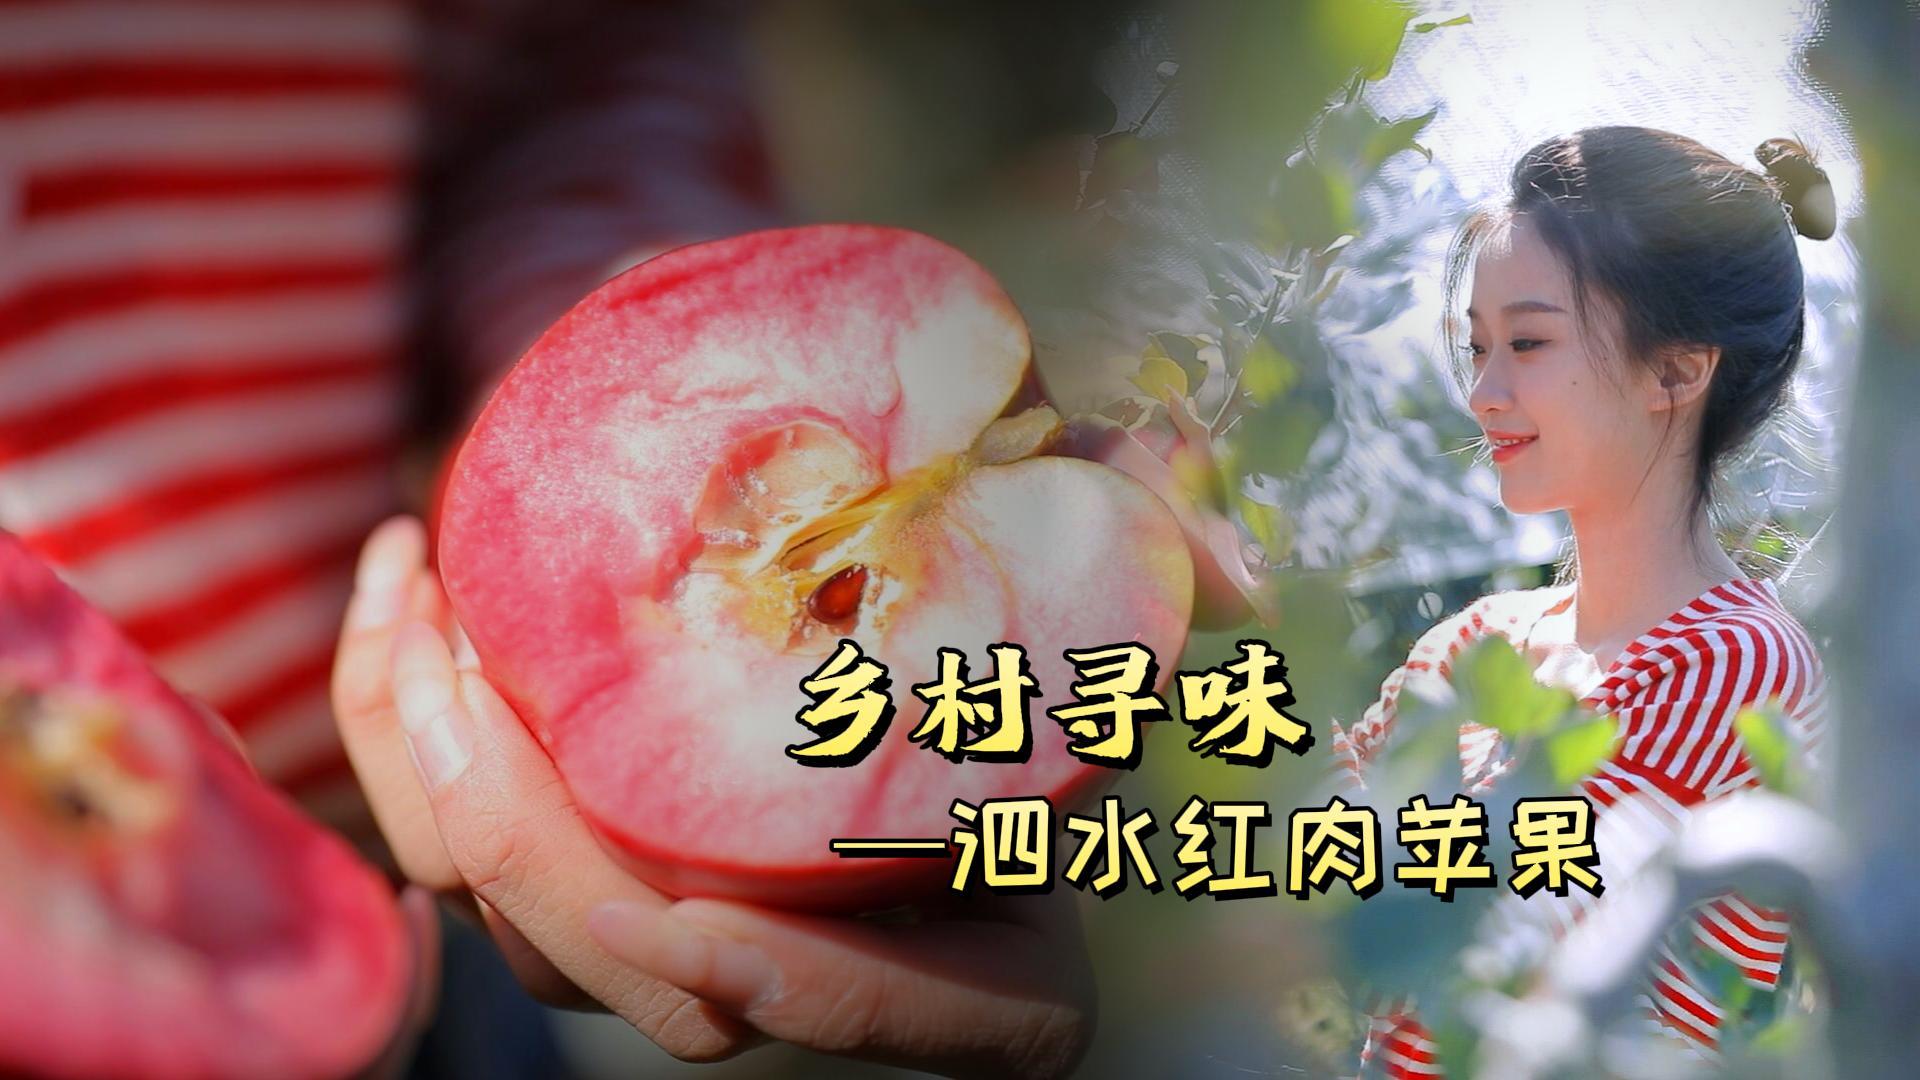 更济宁 | 乡村寻味——泗水红肉苹果